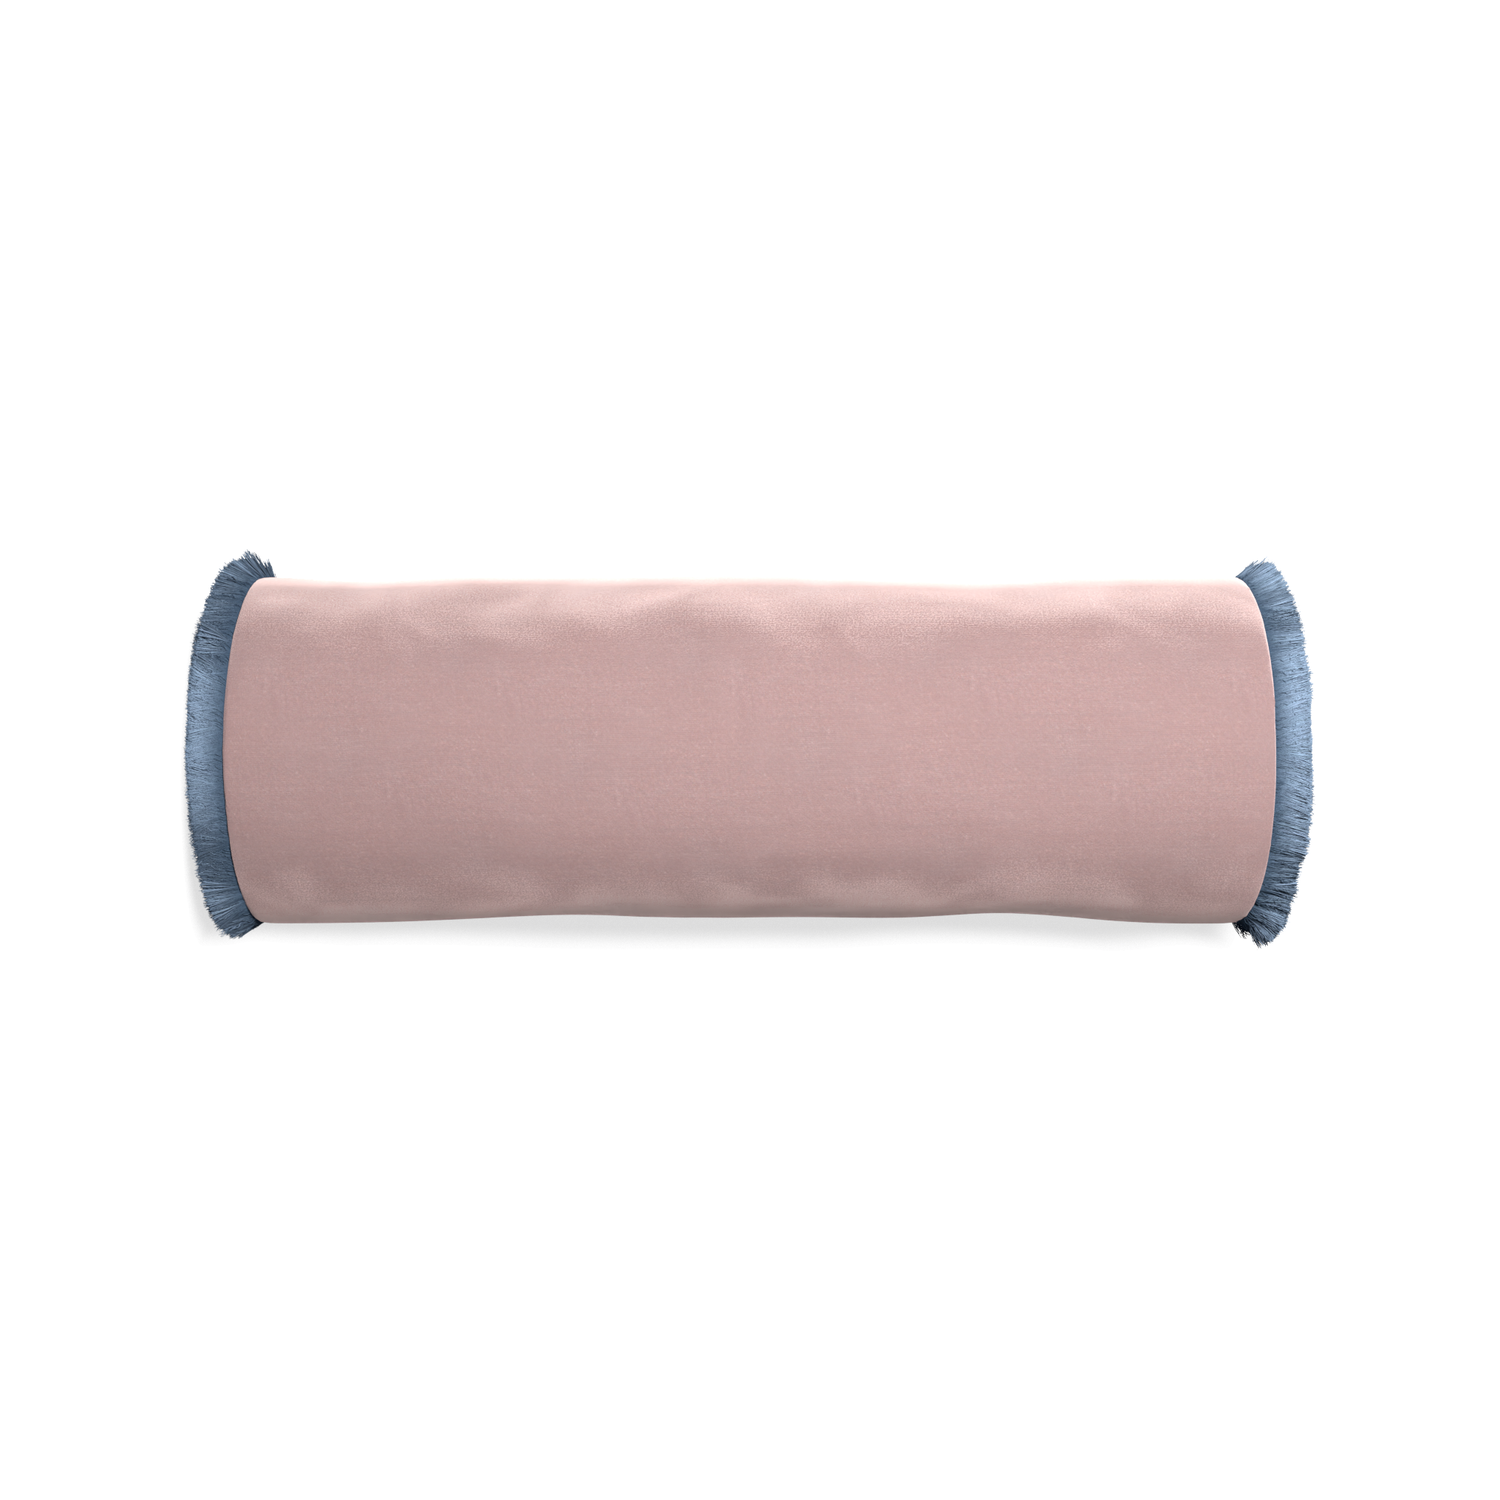 bolster mauve velvet pillow with sky blue fringe